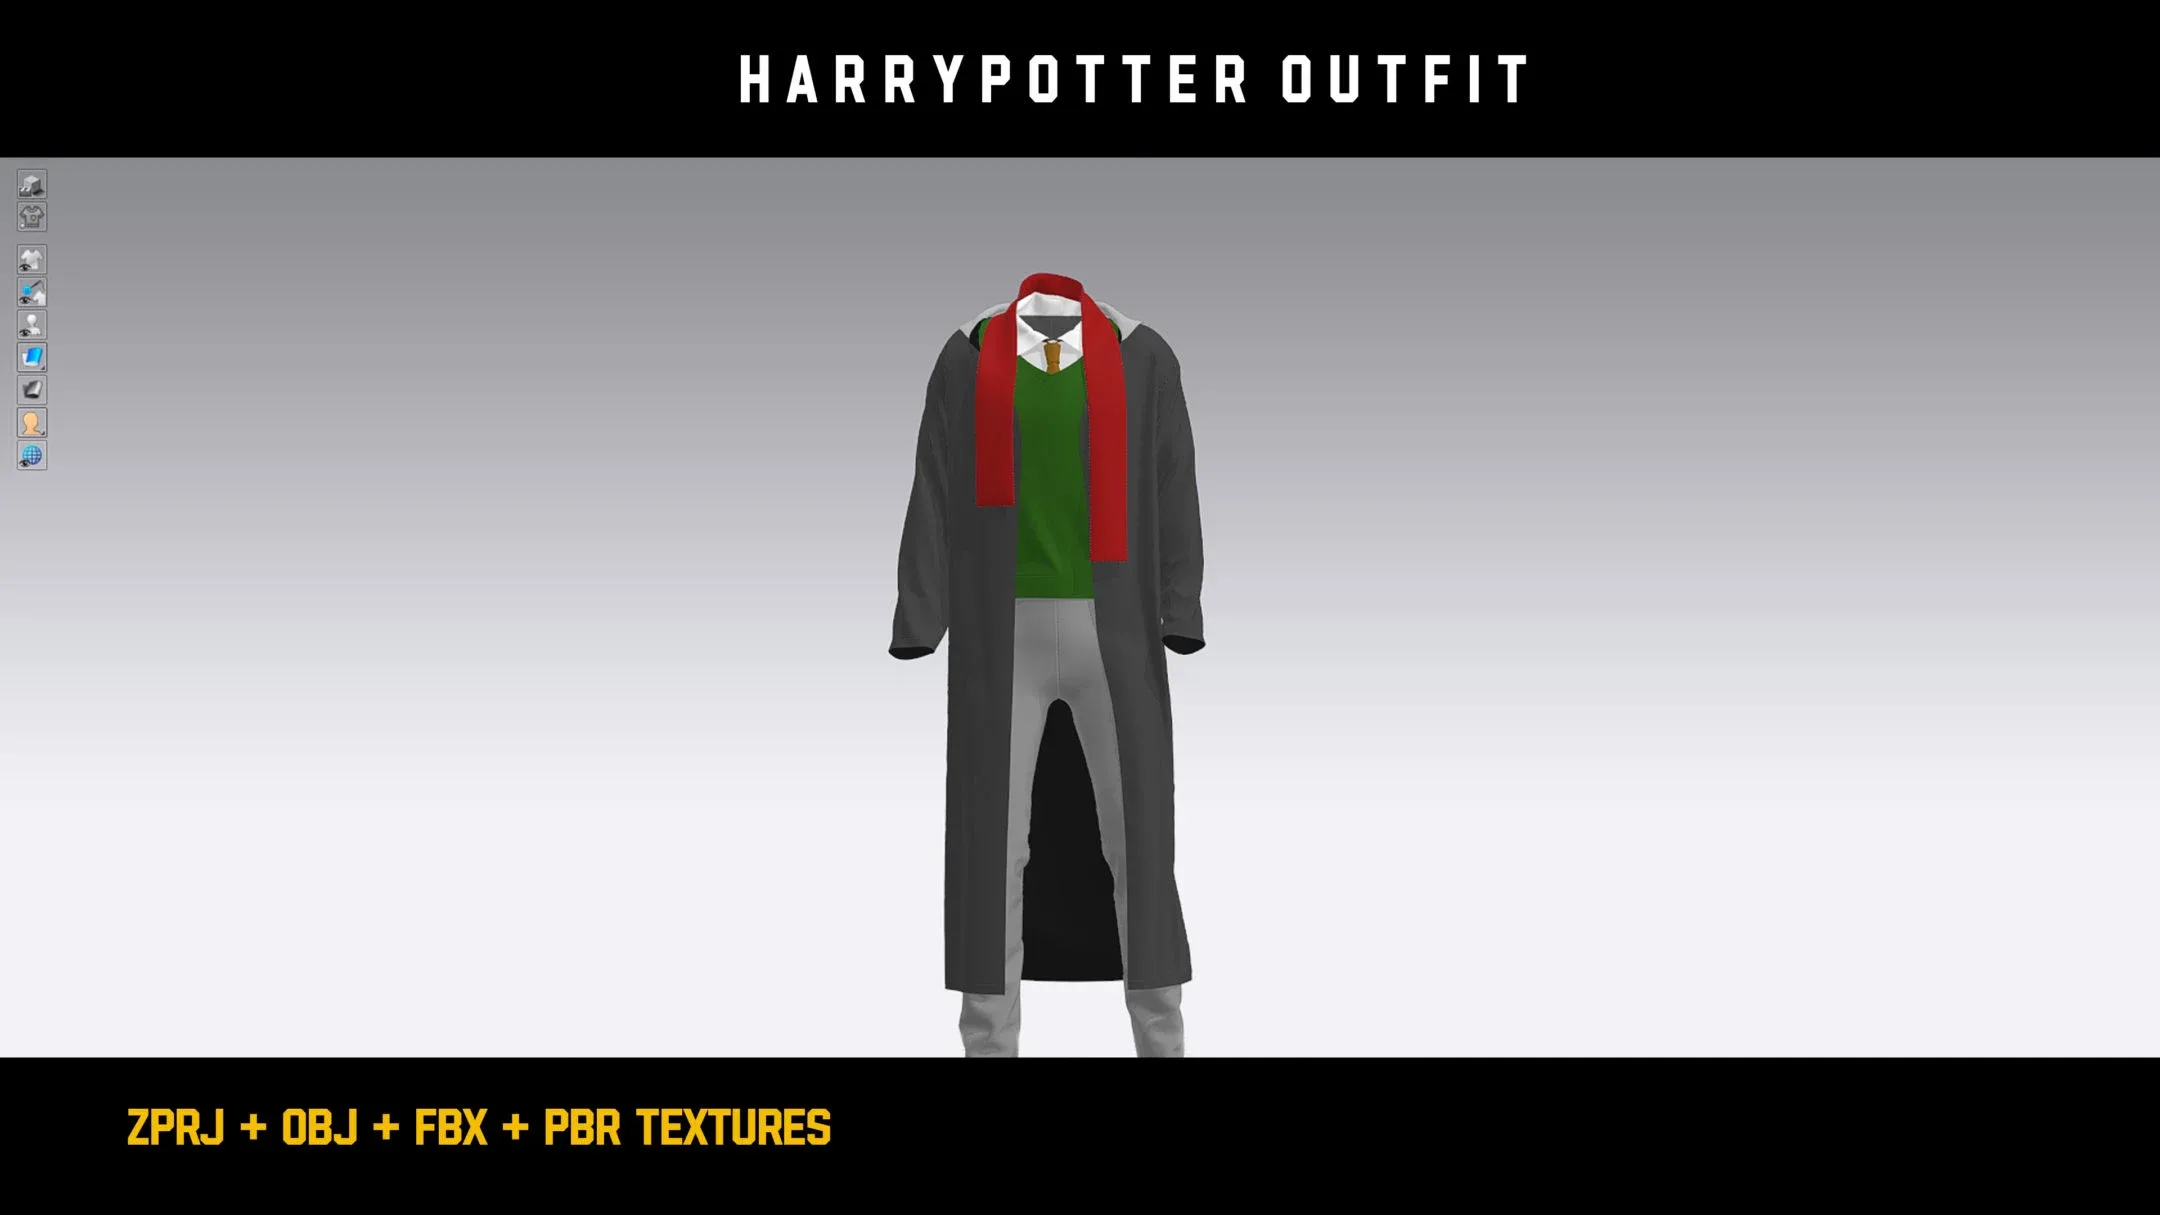 " Harry Potter Outfit " / ZPRJ - OBJ - FBX